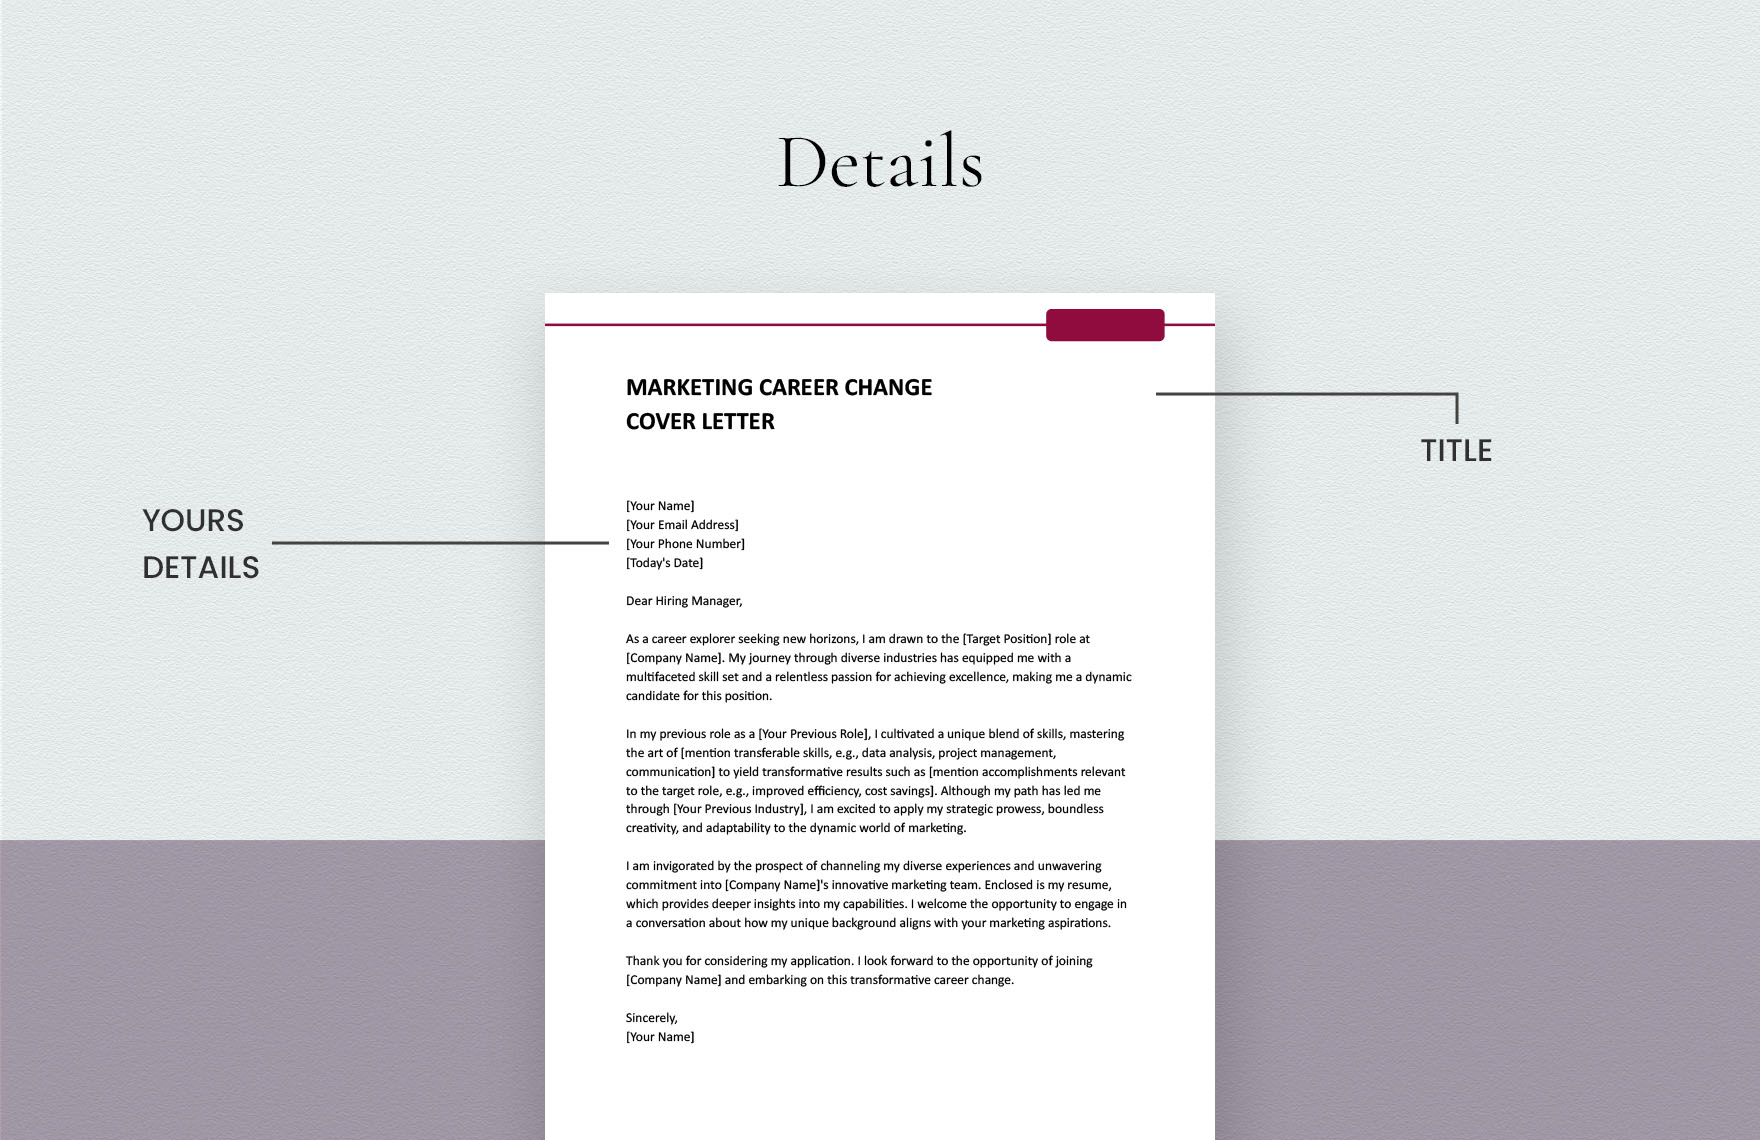 Marketing Career Change Cover Letter